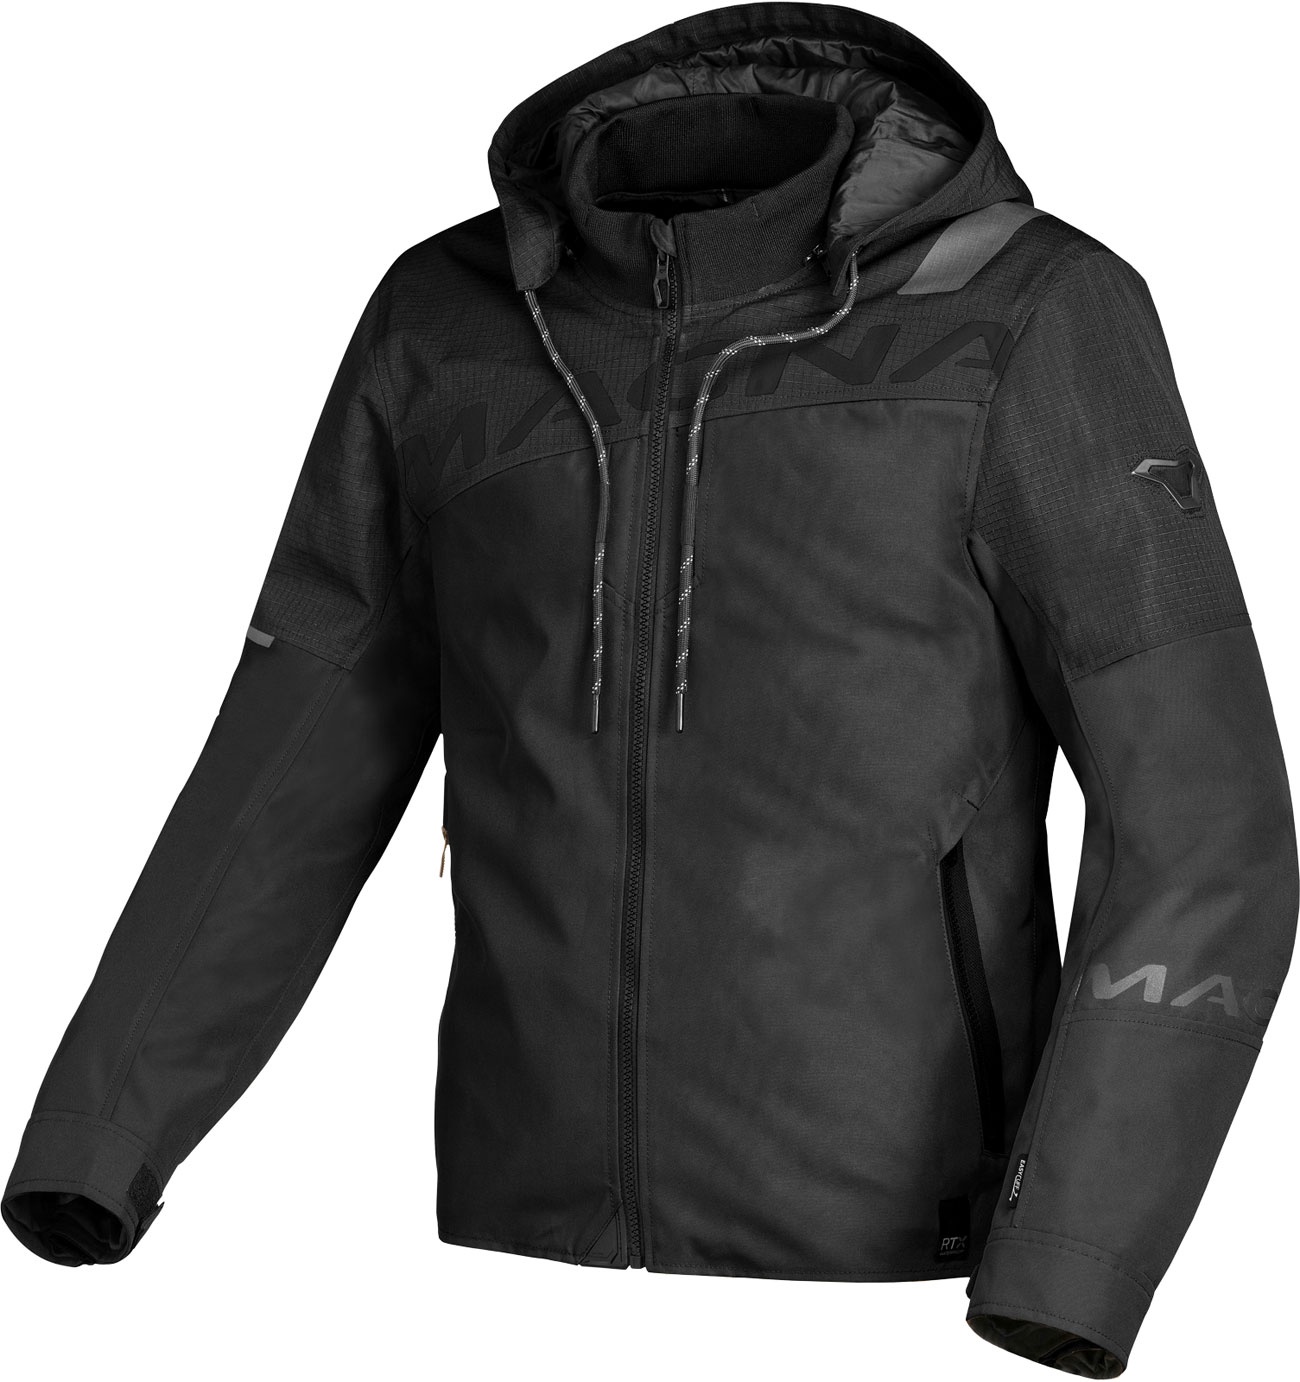 Macna Racoon, veste textile imperméable - Noir - L